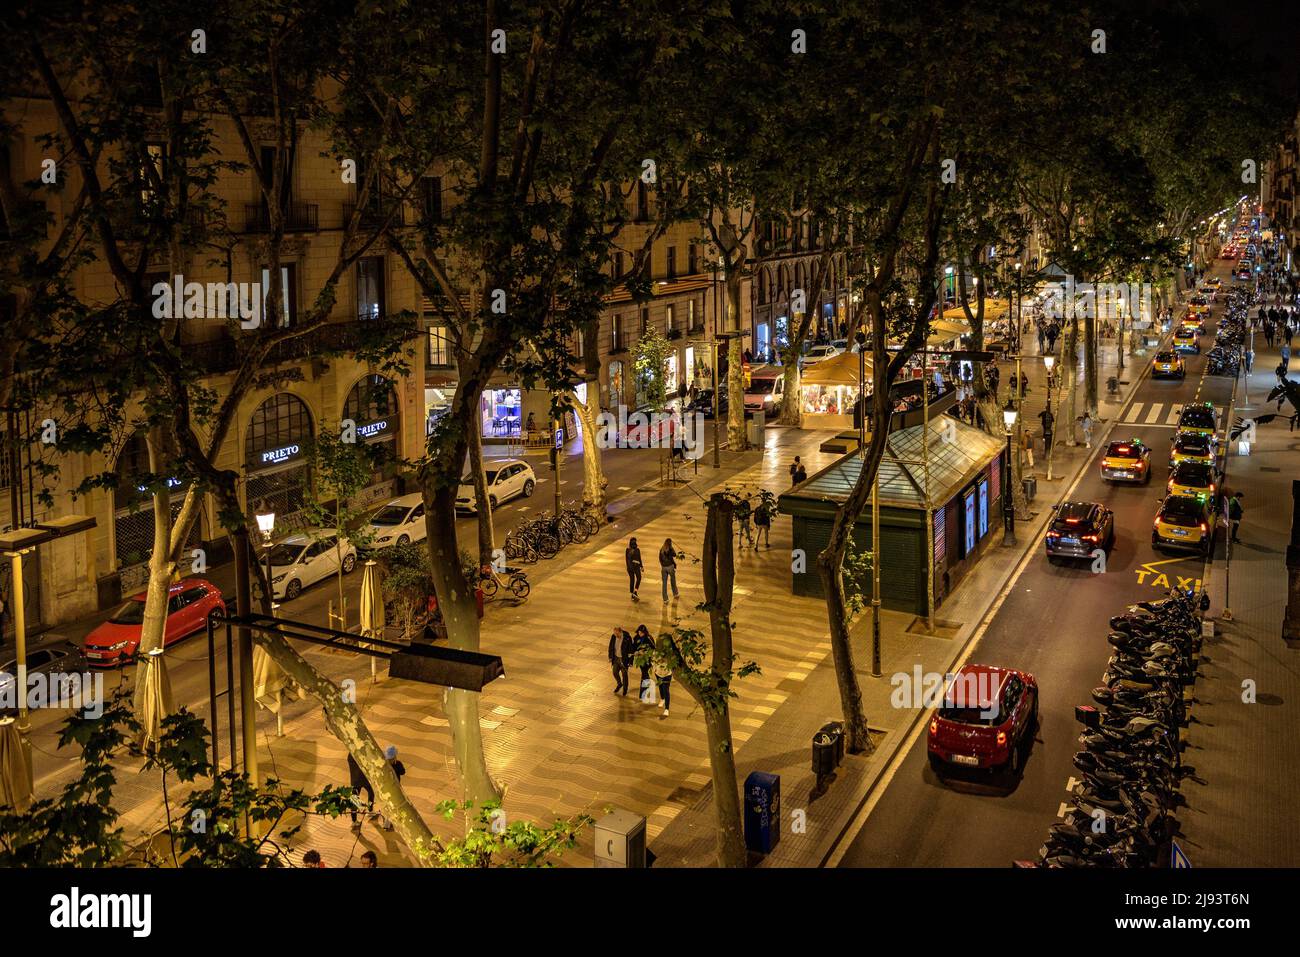 The emblematic promenade of La Rambla / Las Ramblas in Barcelona, at night (Barcelona, Catalonia, Spain) ESP: El paseo emblemático de La Rambla, BCN Stock Photo